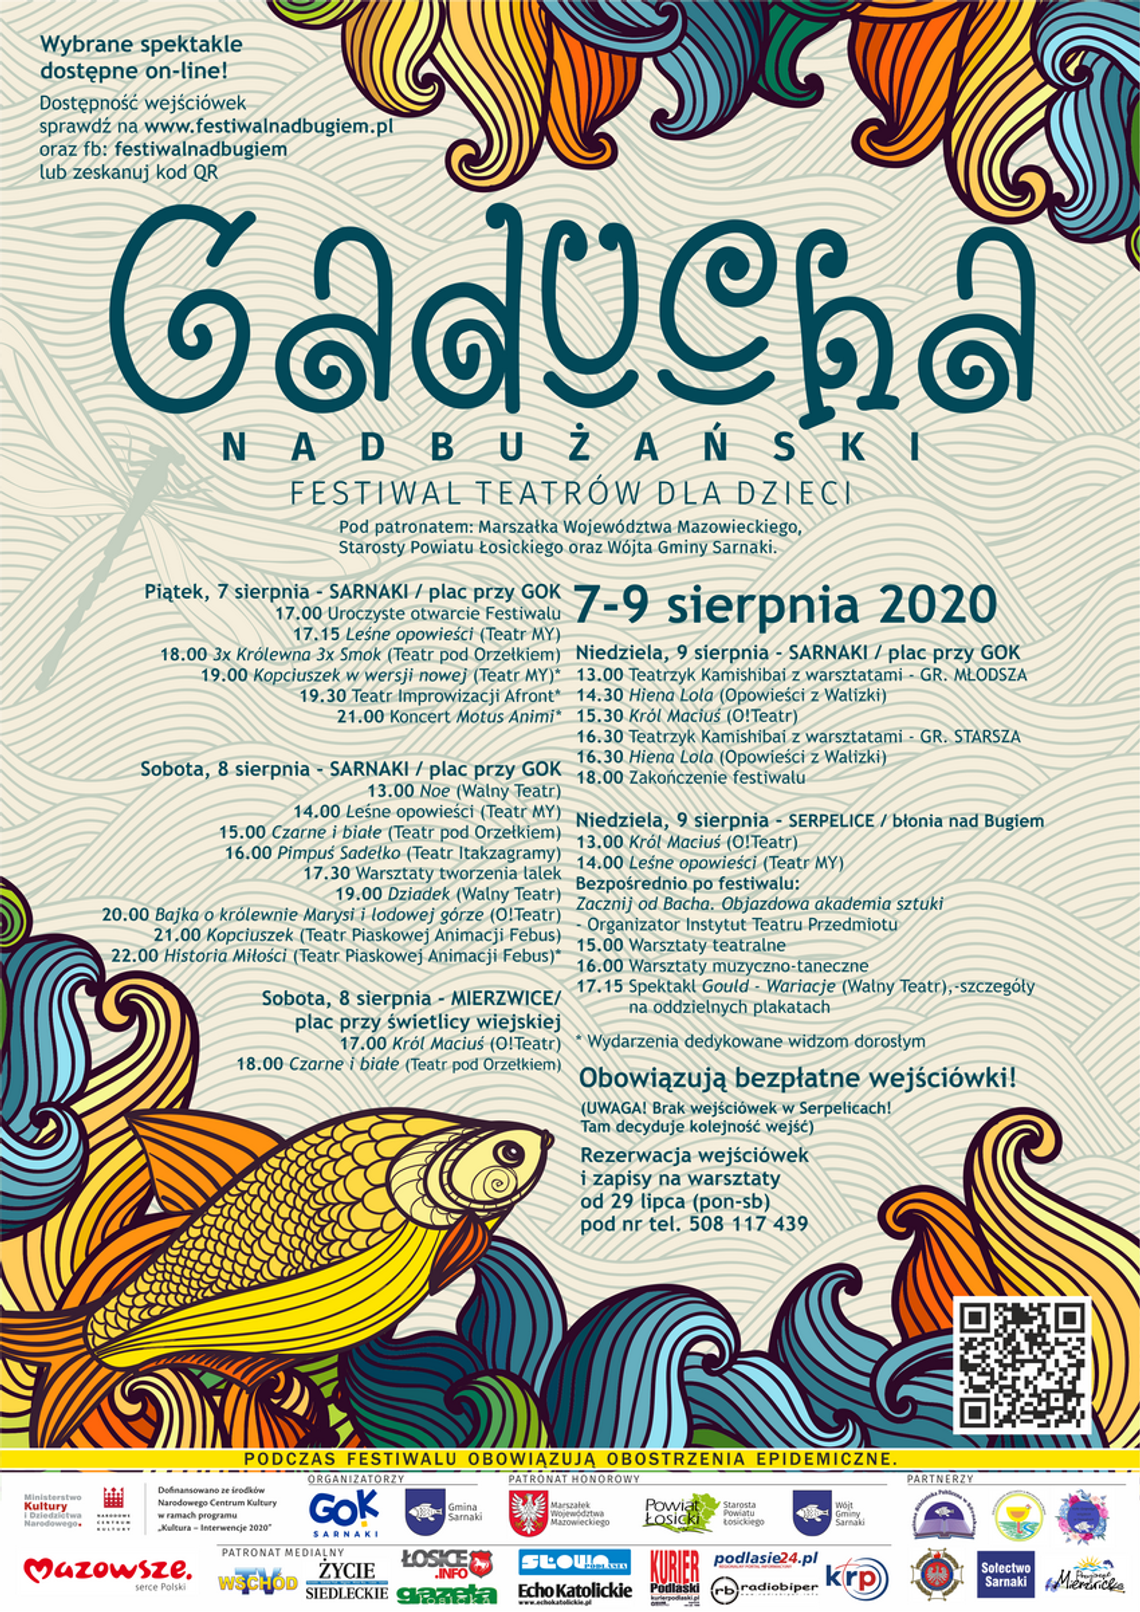 Nadbużański Festiwal Teatrów dla Dzieci GADUCHA